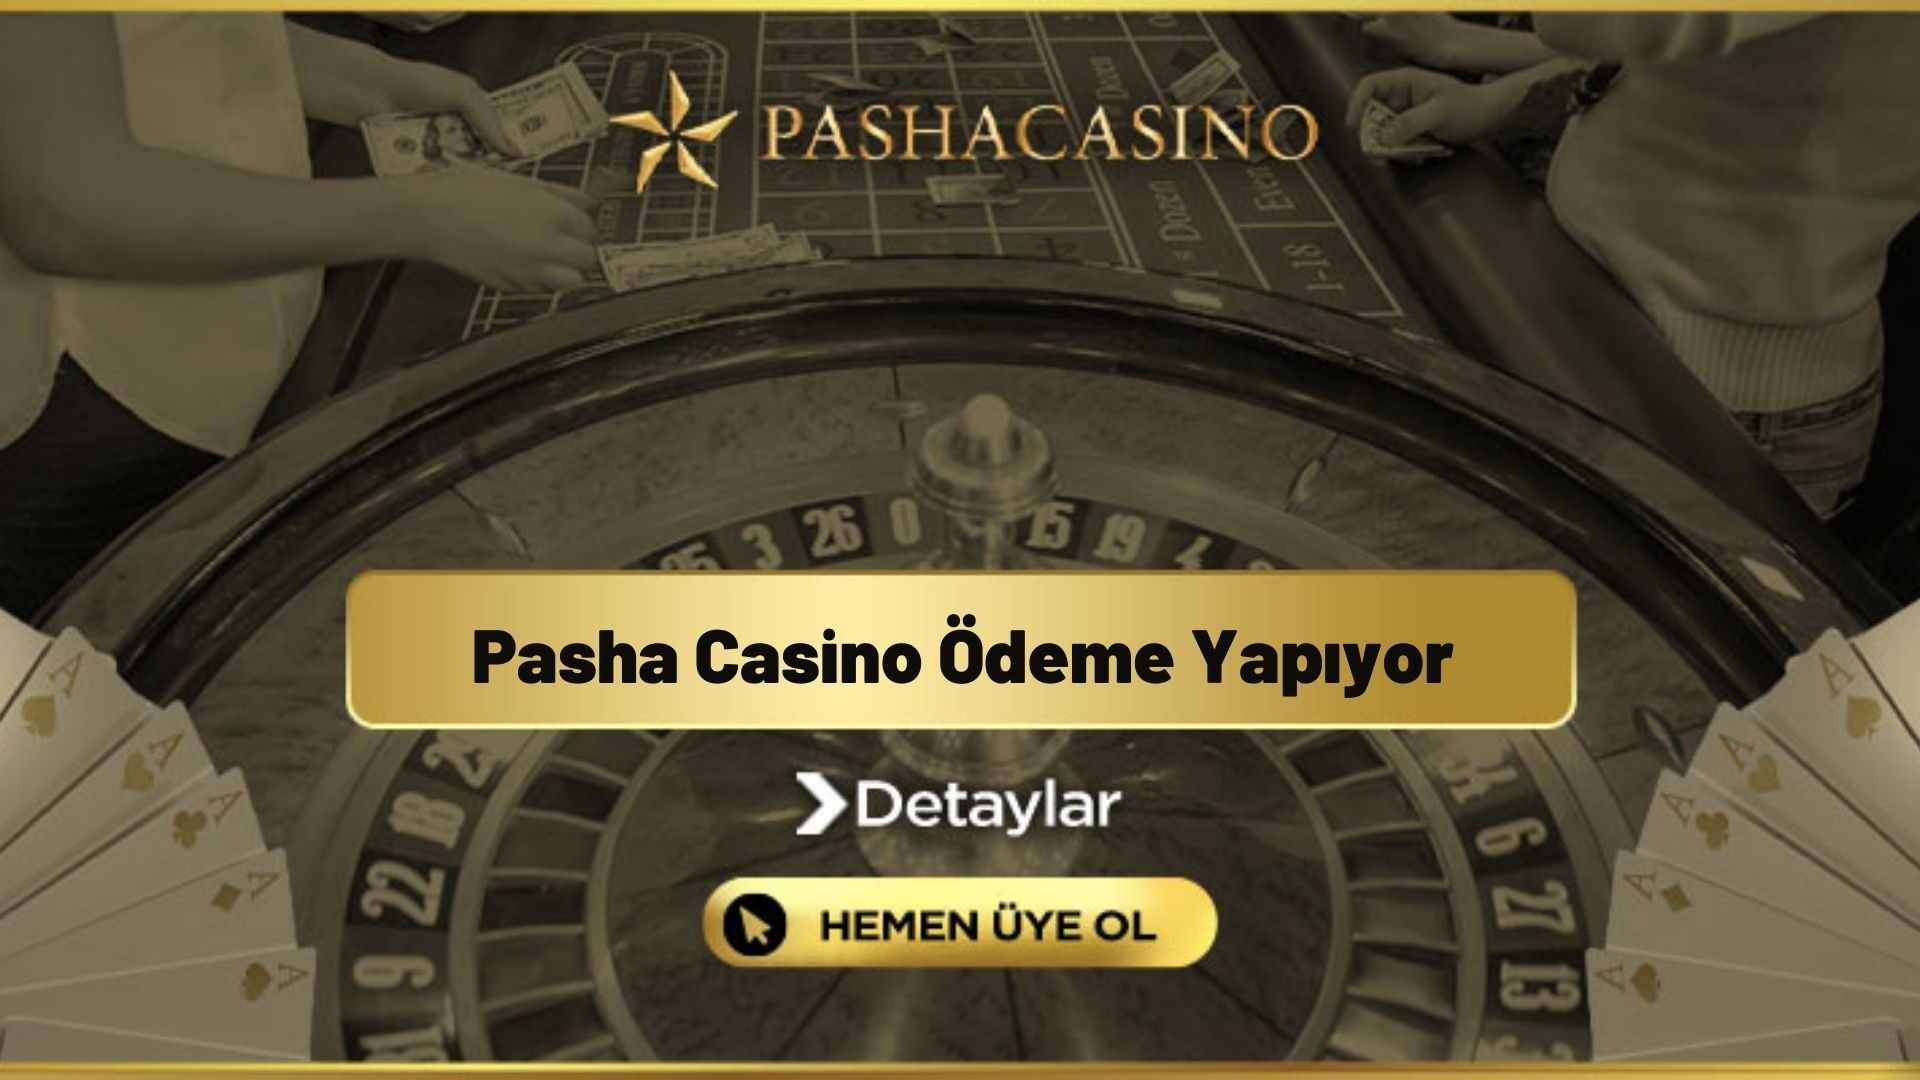 Pasha Casino Ödeme Yapıyor